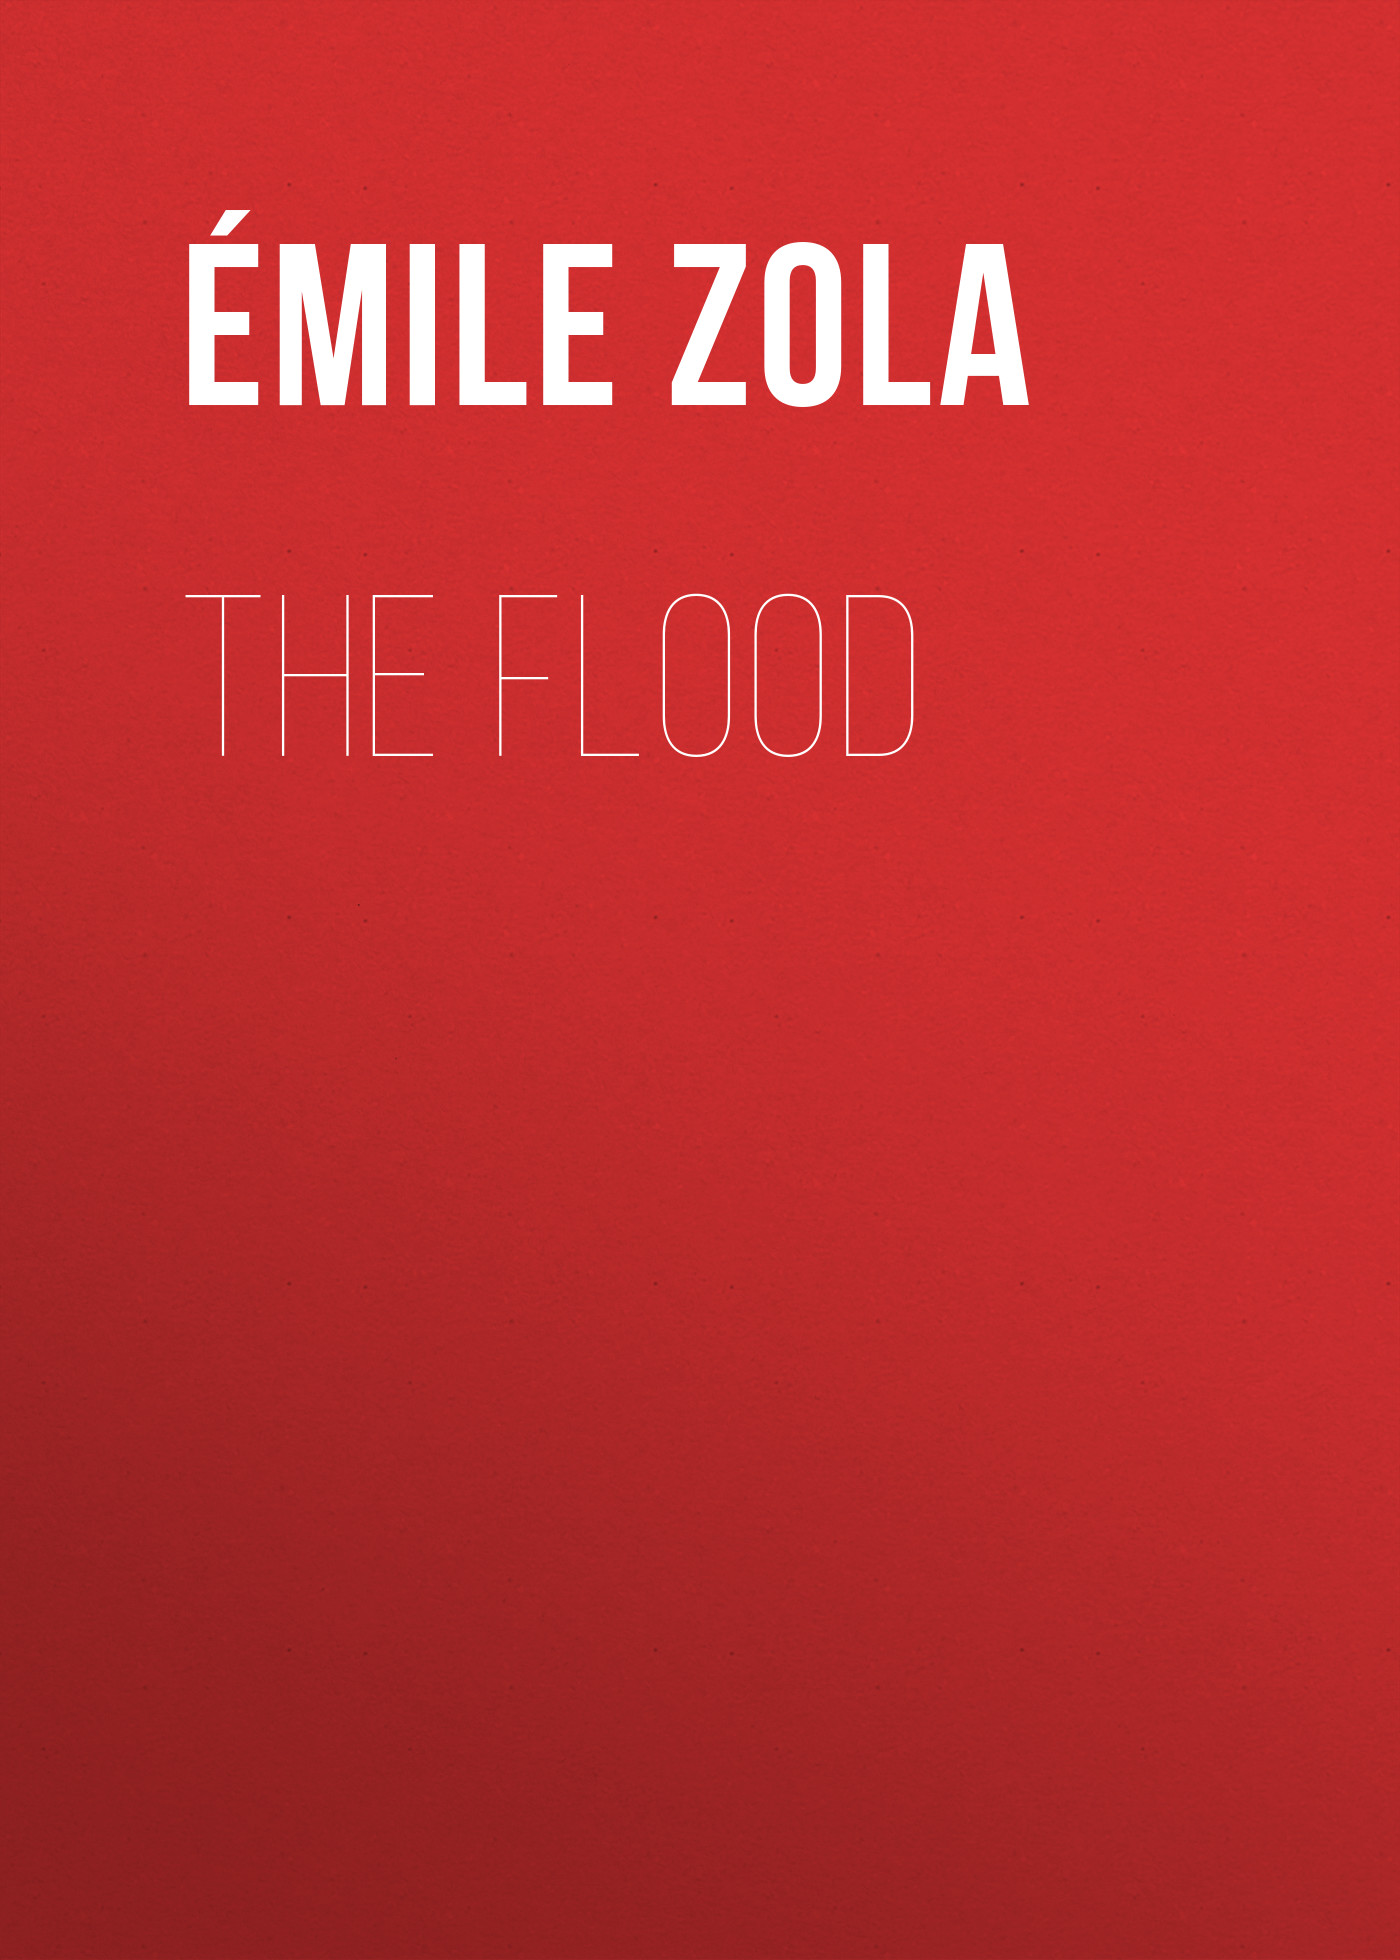 Книга The Flood из серии , созданная Émile Zola, может относится к жанру Литература 19 века, Зарубежная старинная литература, Зарубежная классика. Стоимость электронной книги The Flood с идентификатором 25560524 составляет 0 руб.